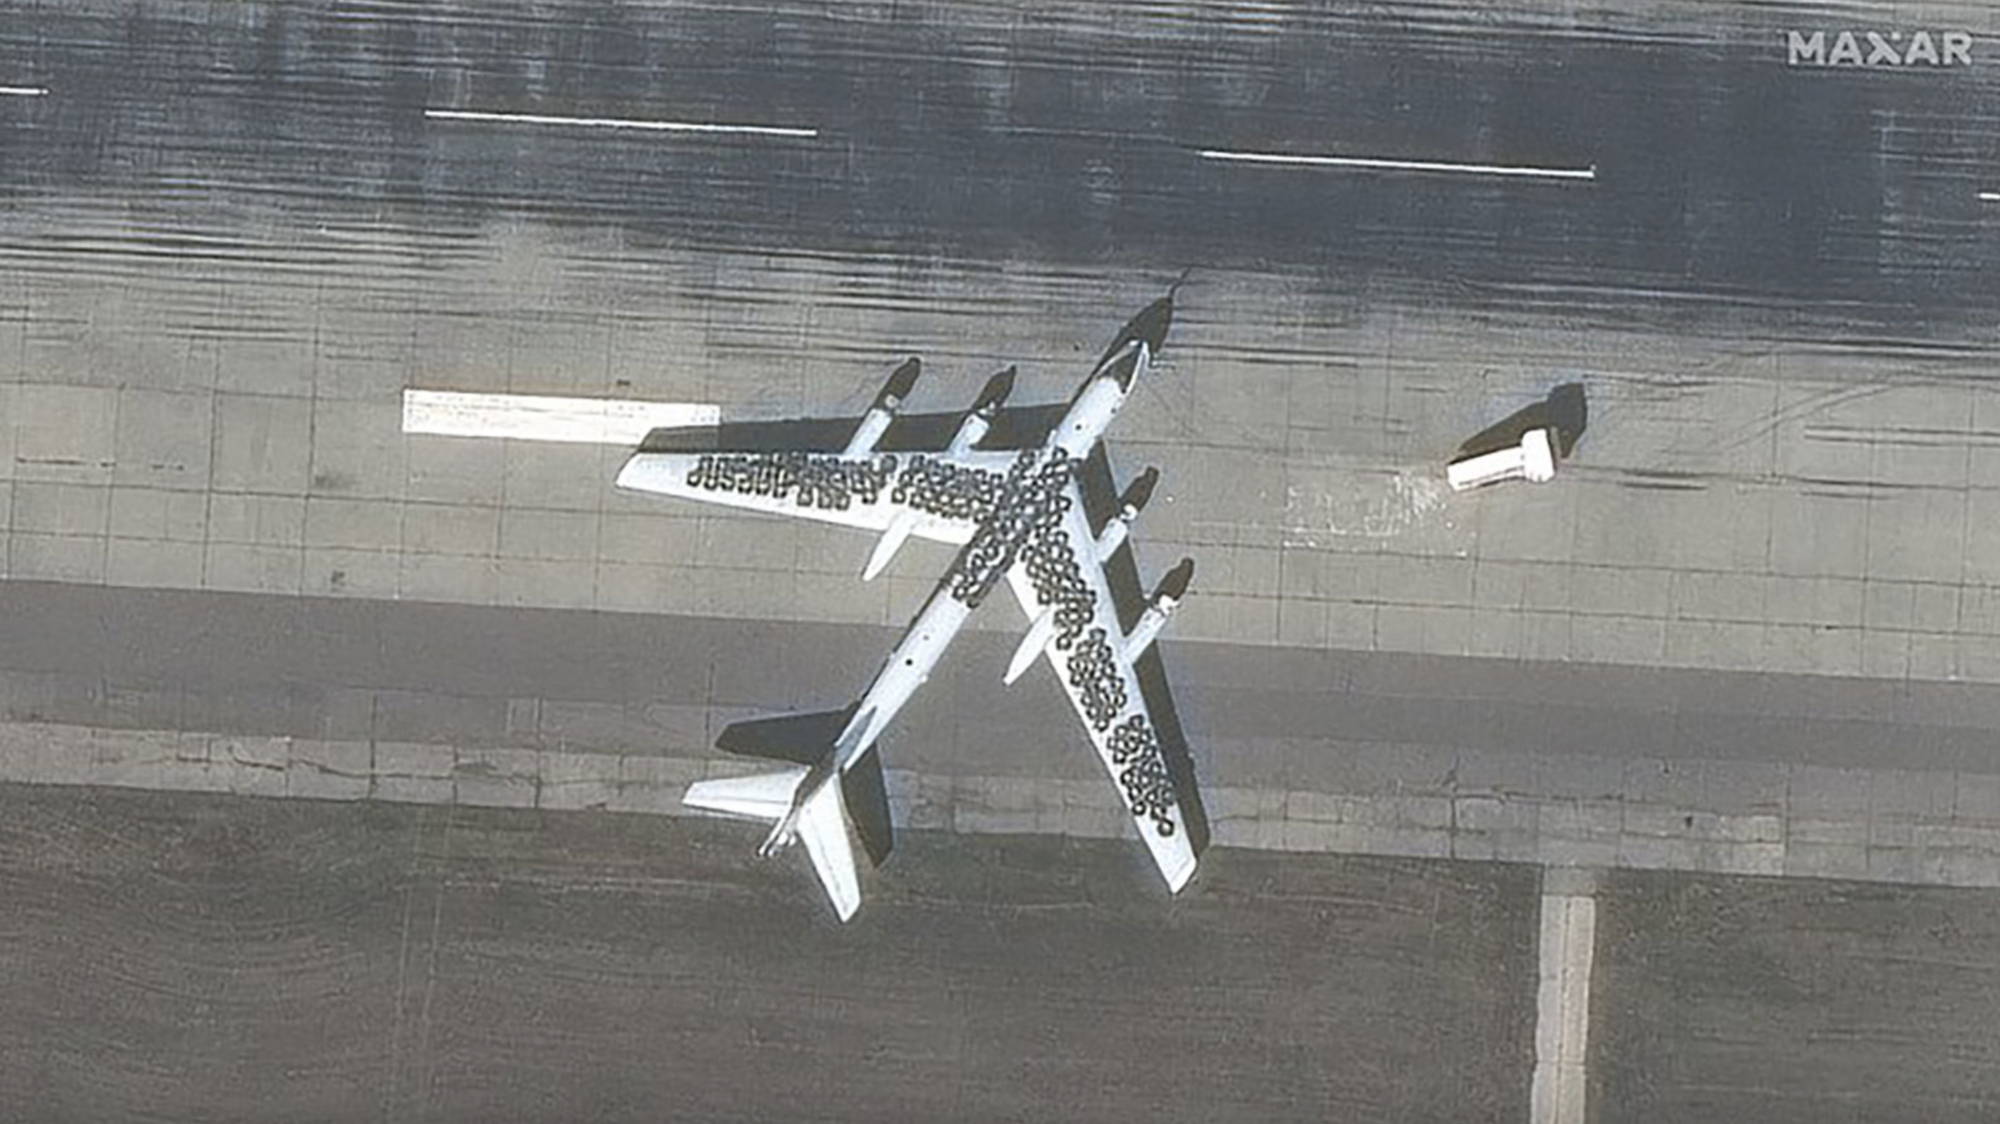 "Це виглядає безглуздо": західні експерти прокоментували "маскування" російських літаків за допомогою шин. Фото